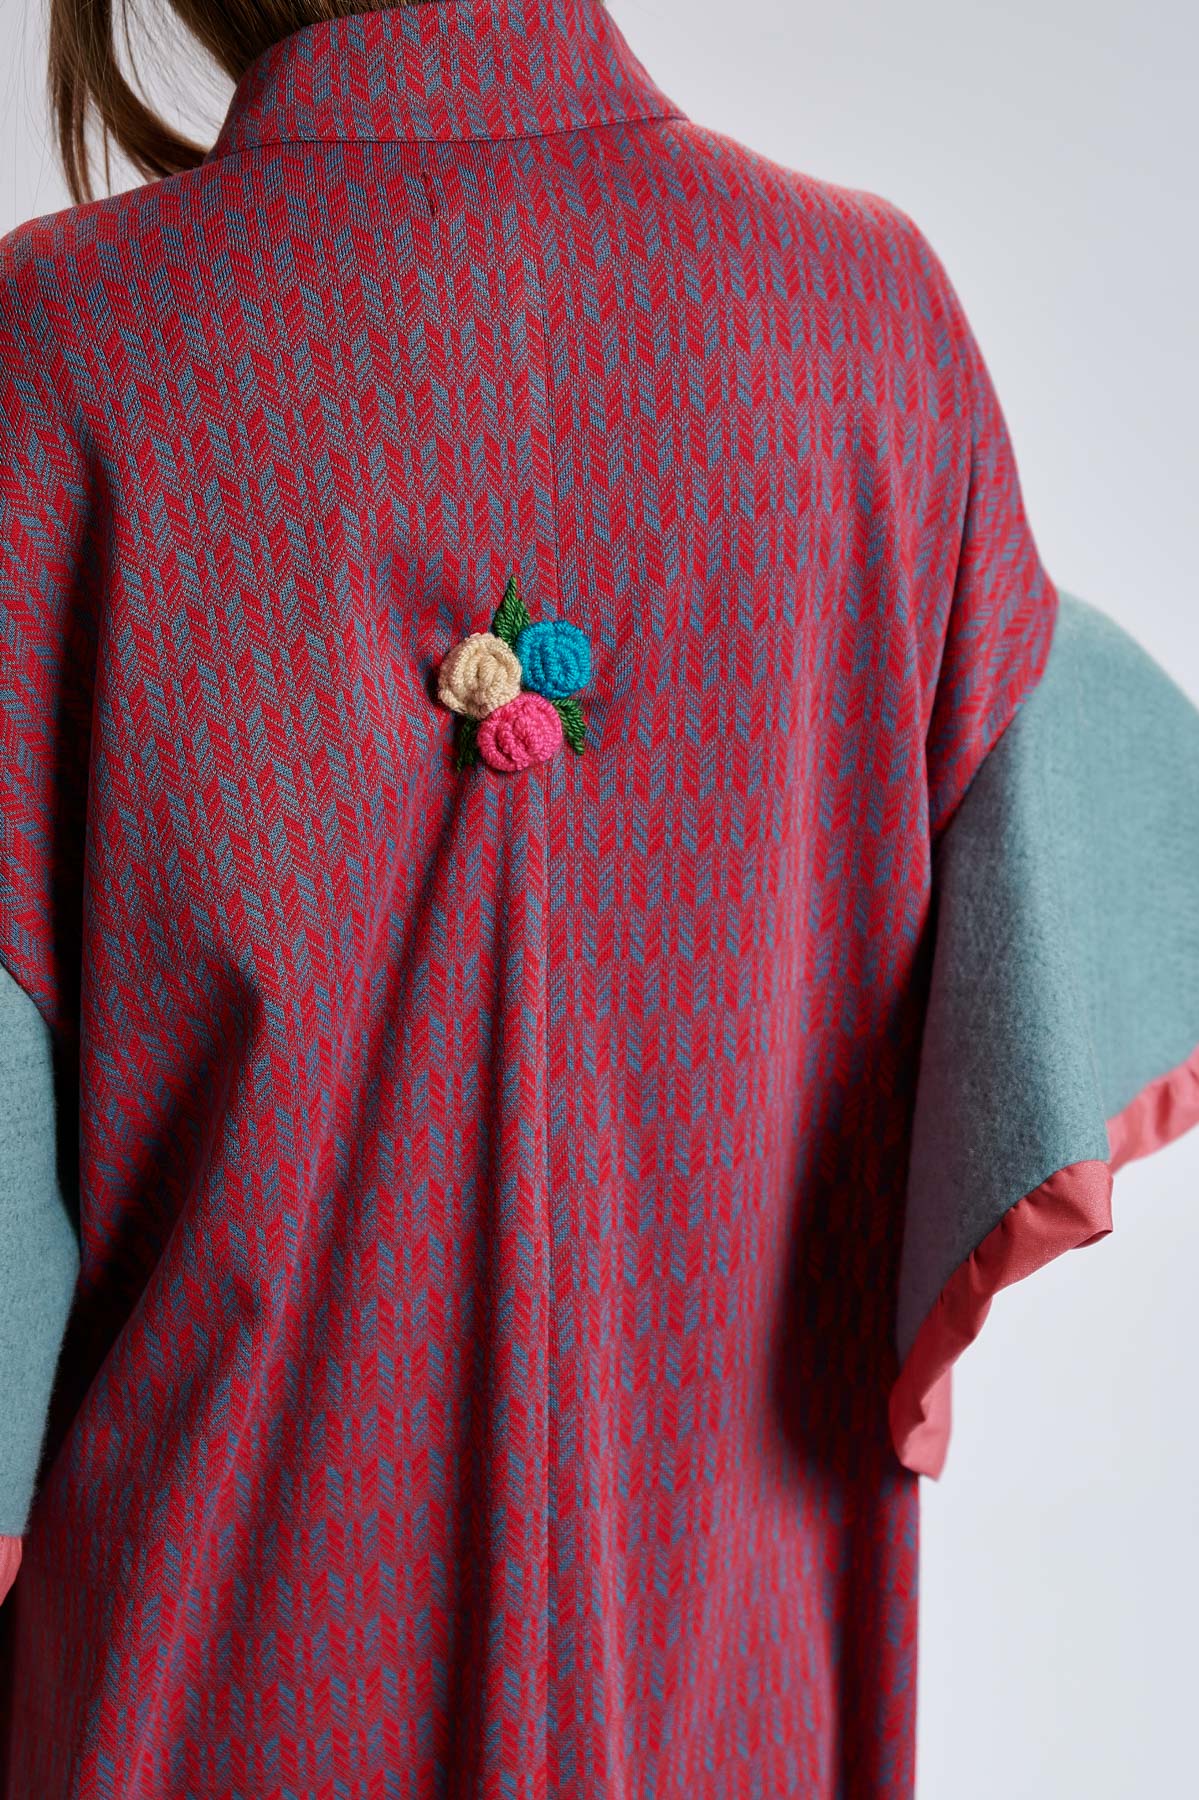 Cape KENIA R. Natural fabrics, original design, handmade embroidery